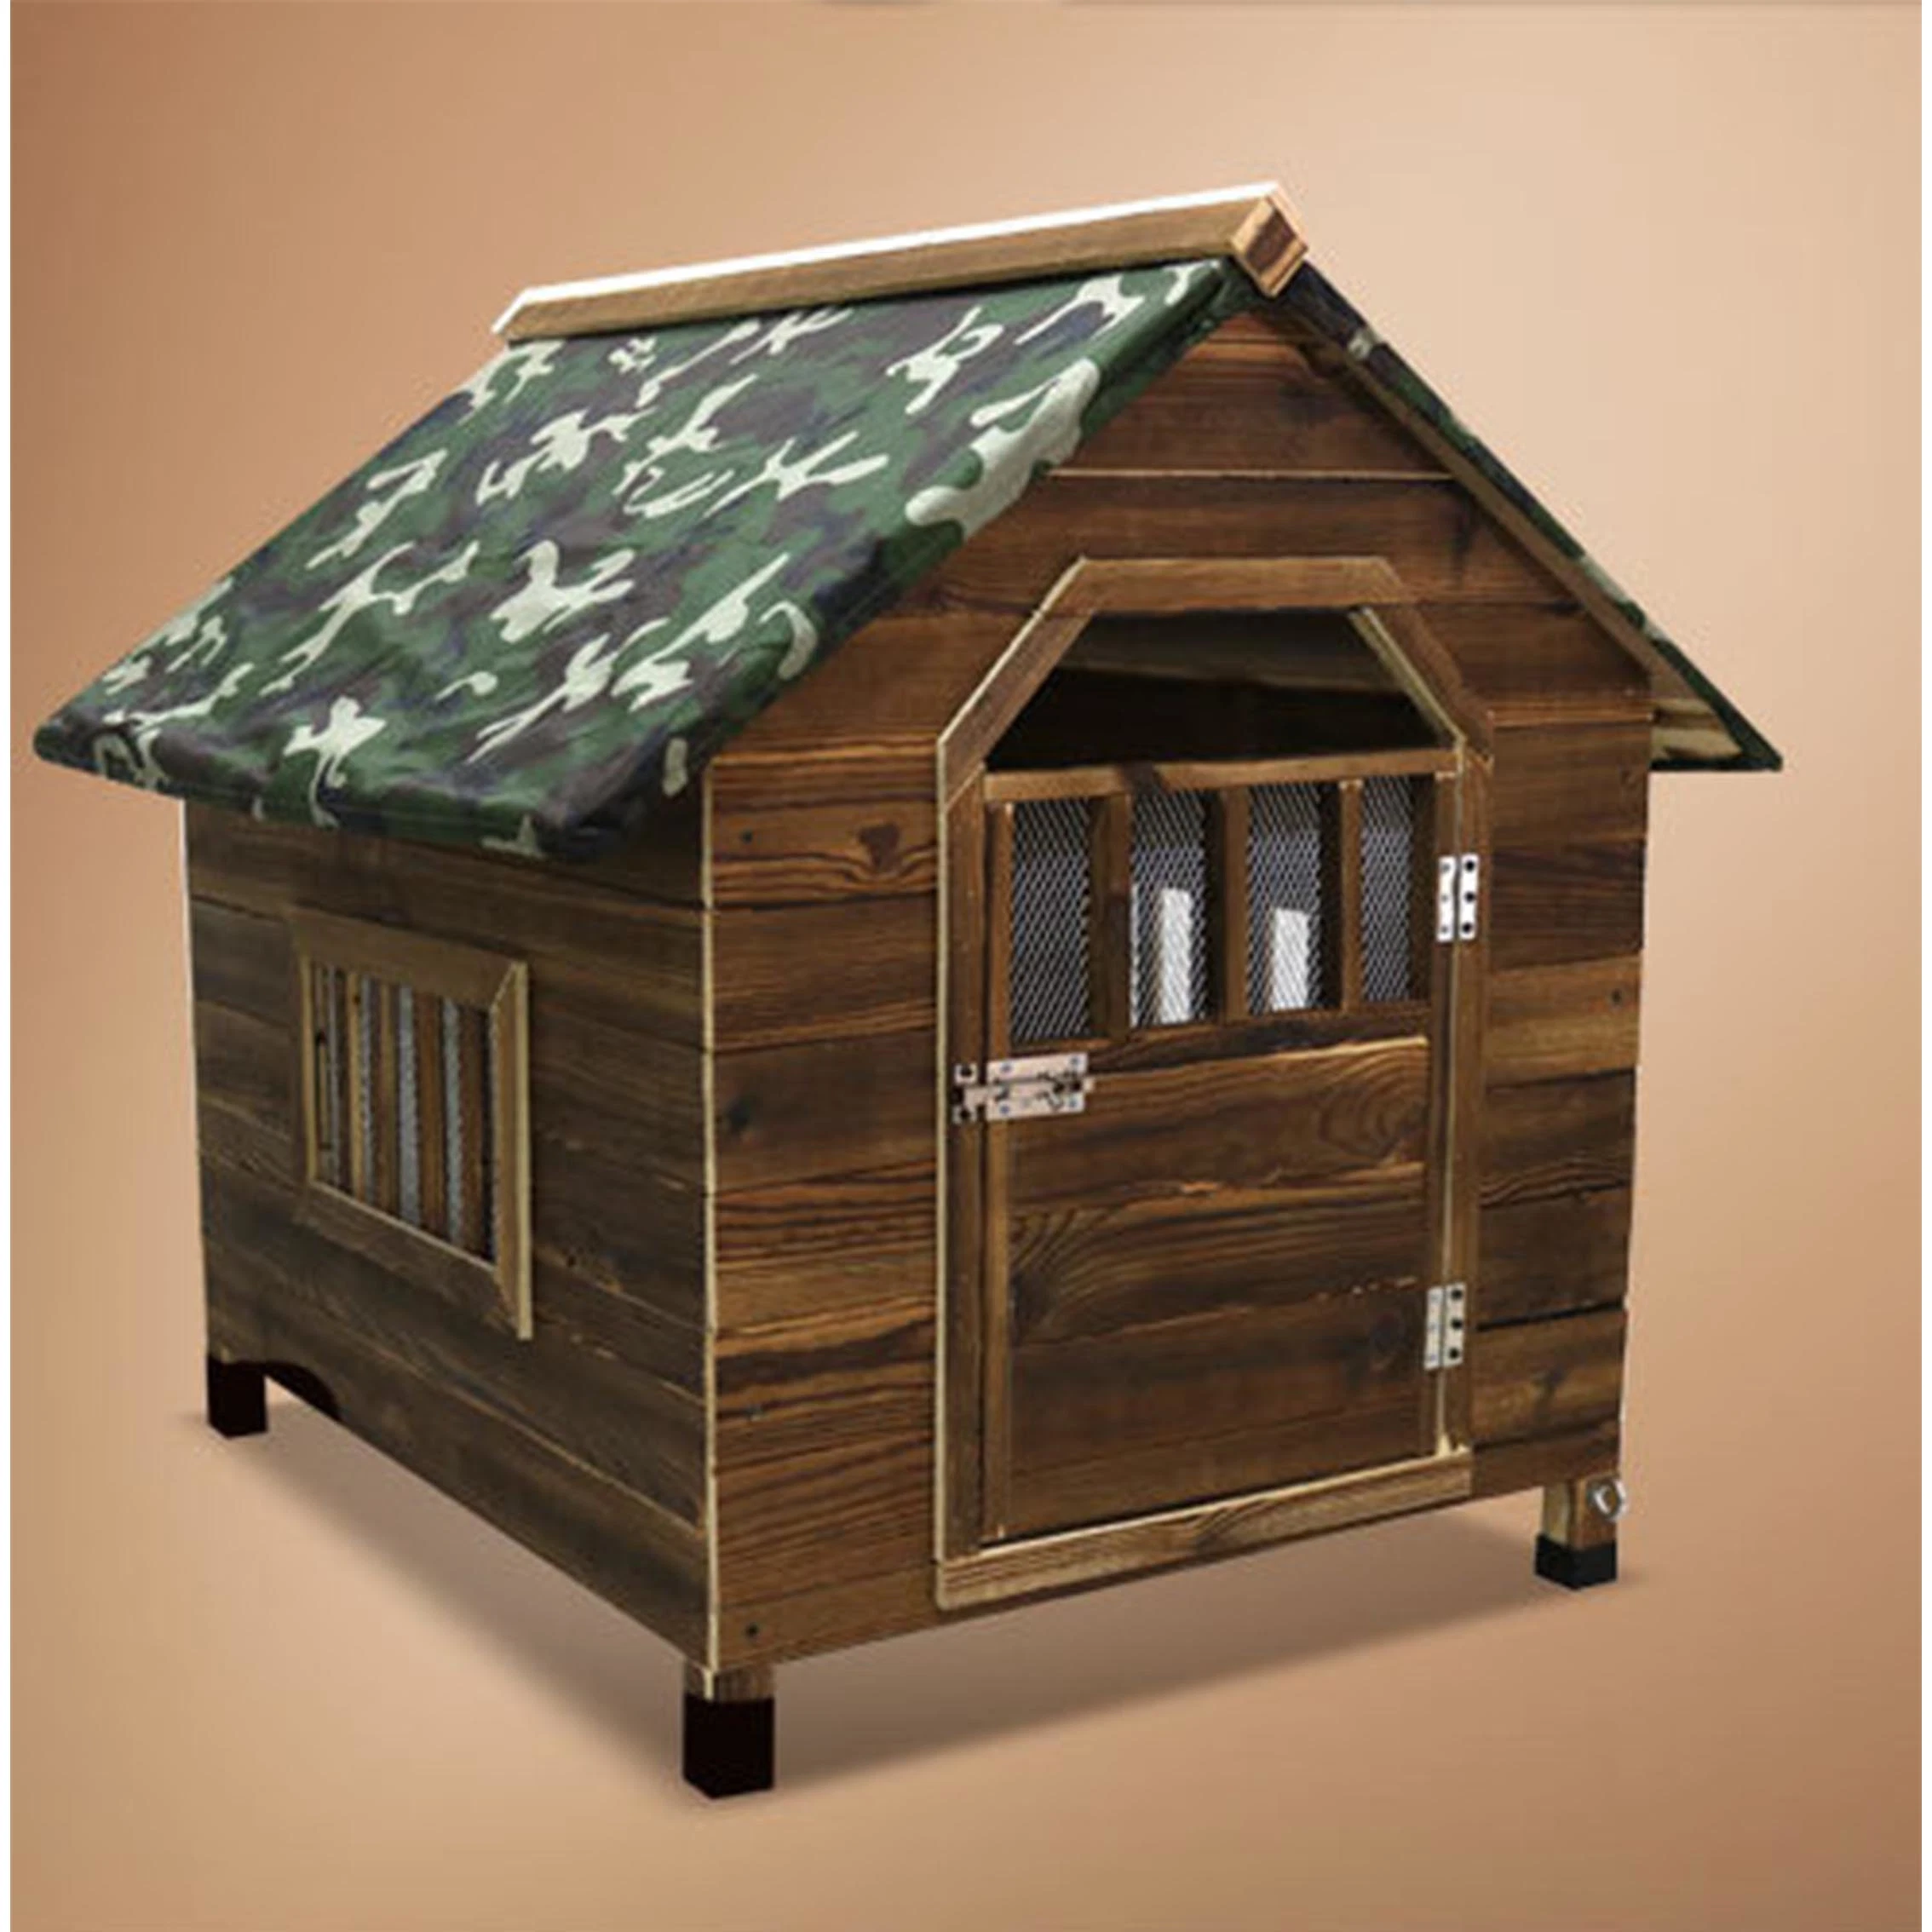 Jaula de perro de madera maciza resistente al agua, carbonizada y anticorrosiva, para uso en exteriores e interiores, casa de perro de madera maciza, mueble de villa para mascotas Amaw-0127.